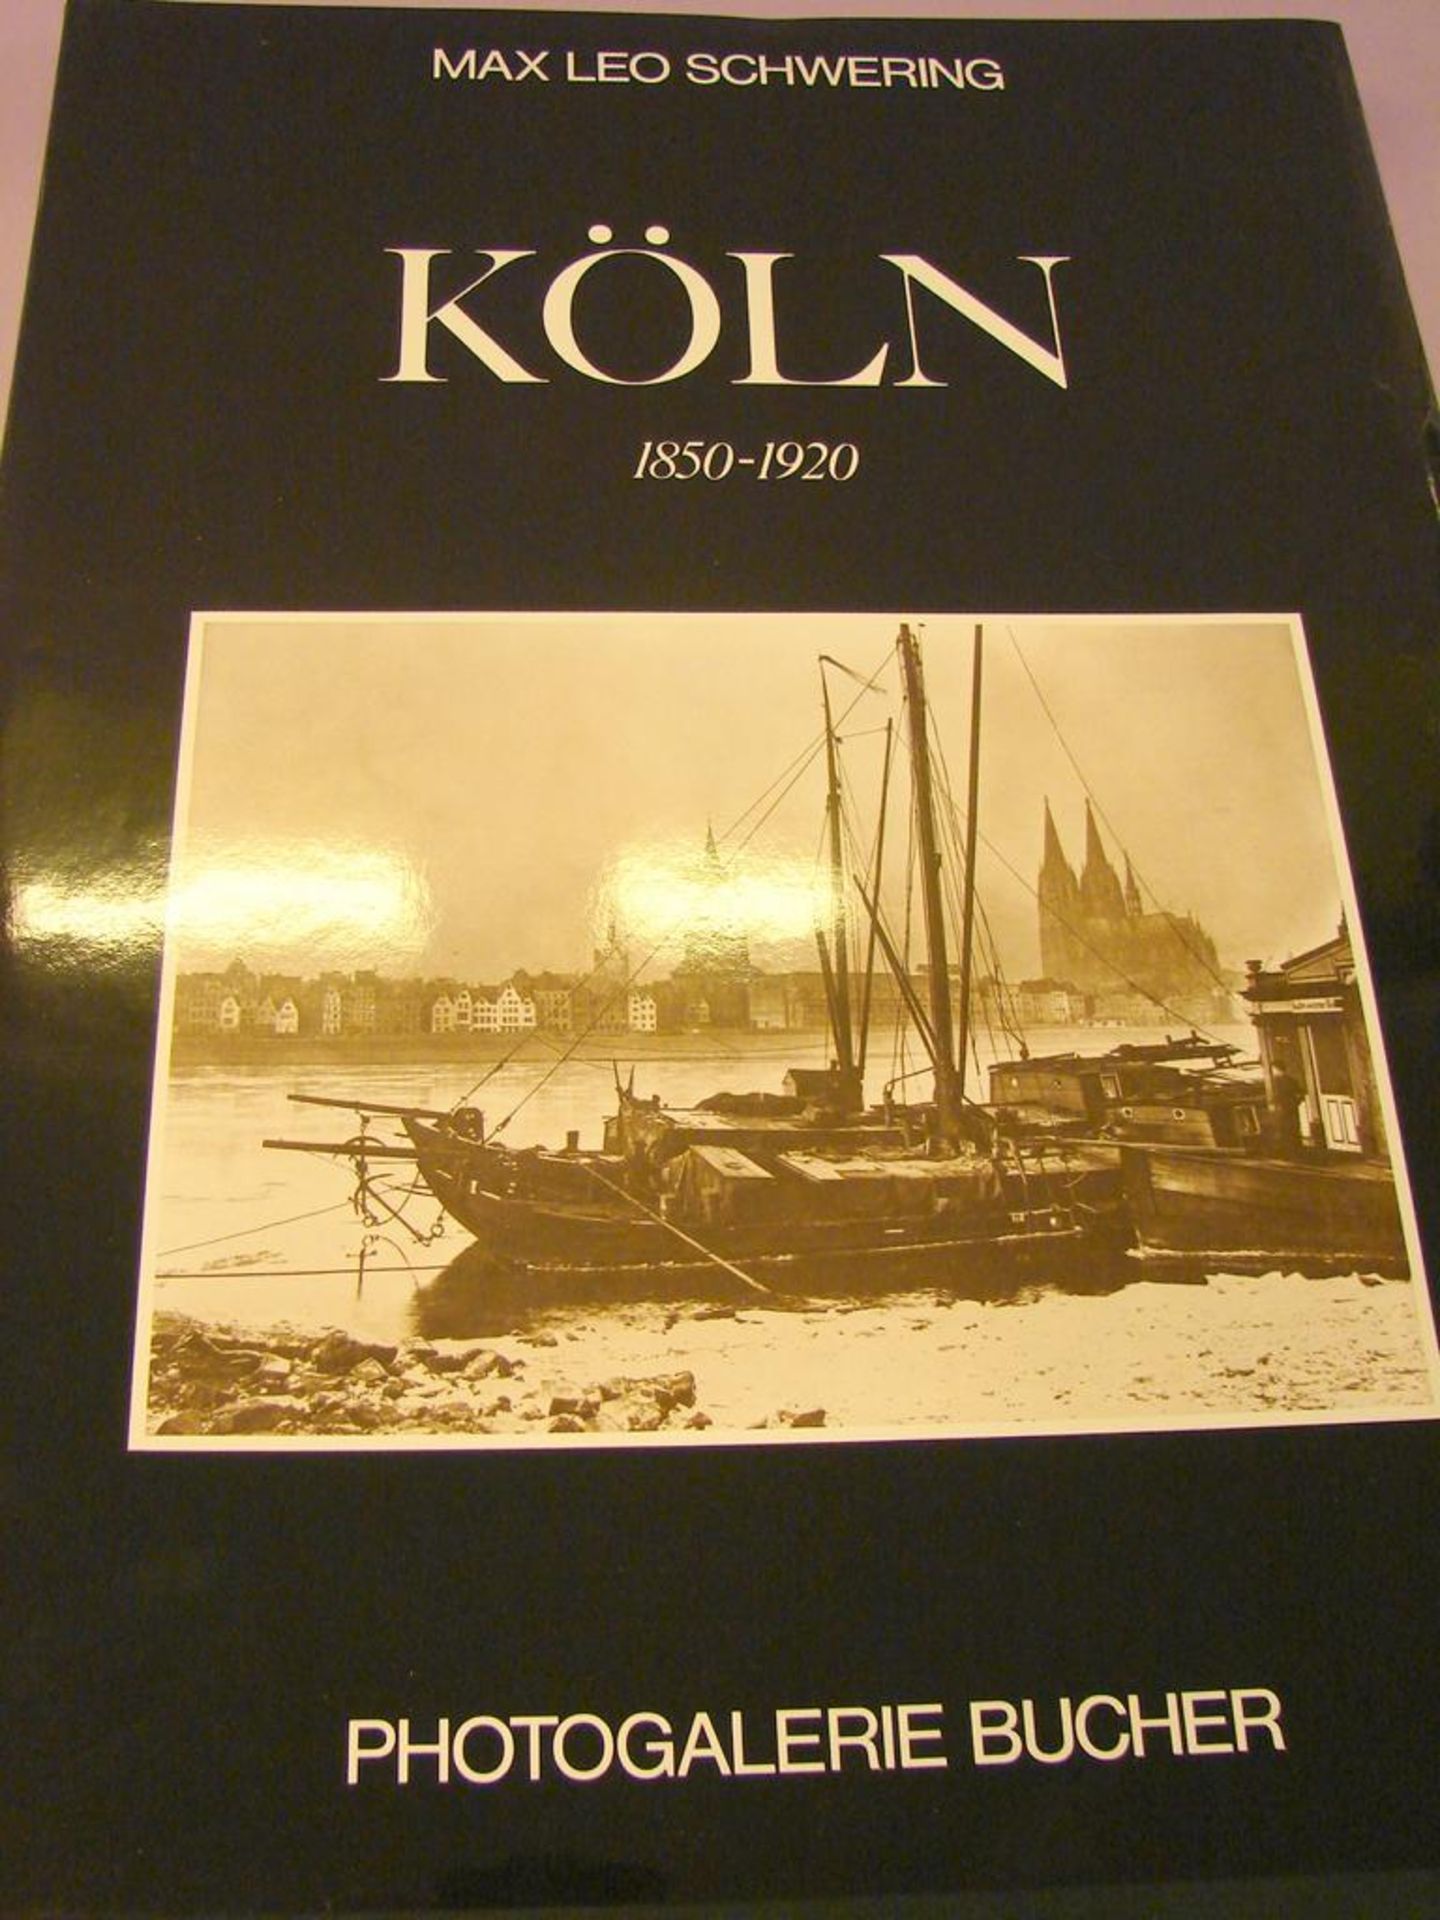 Buch, "Köln, 1850-1920", M. Leo Schwering, Photogalerie, Bucher, 1980